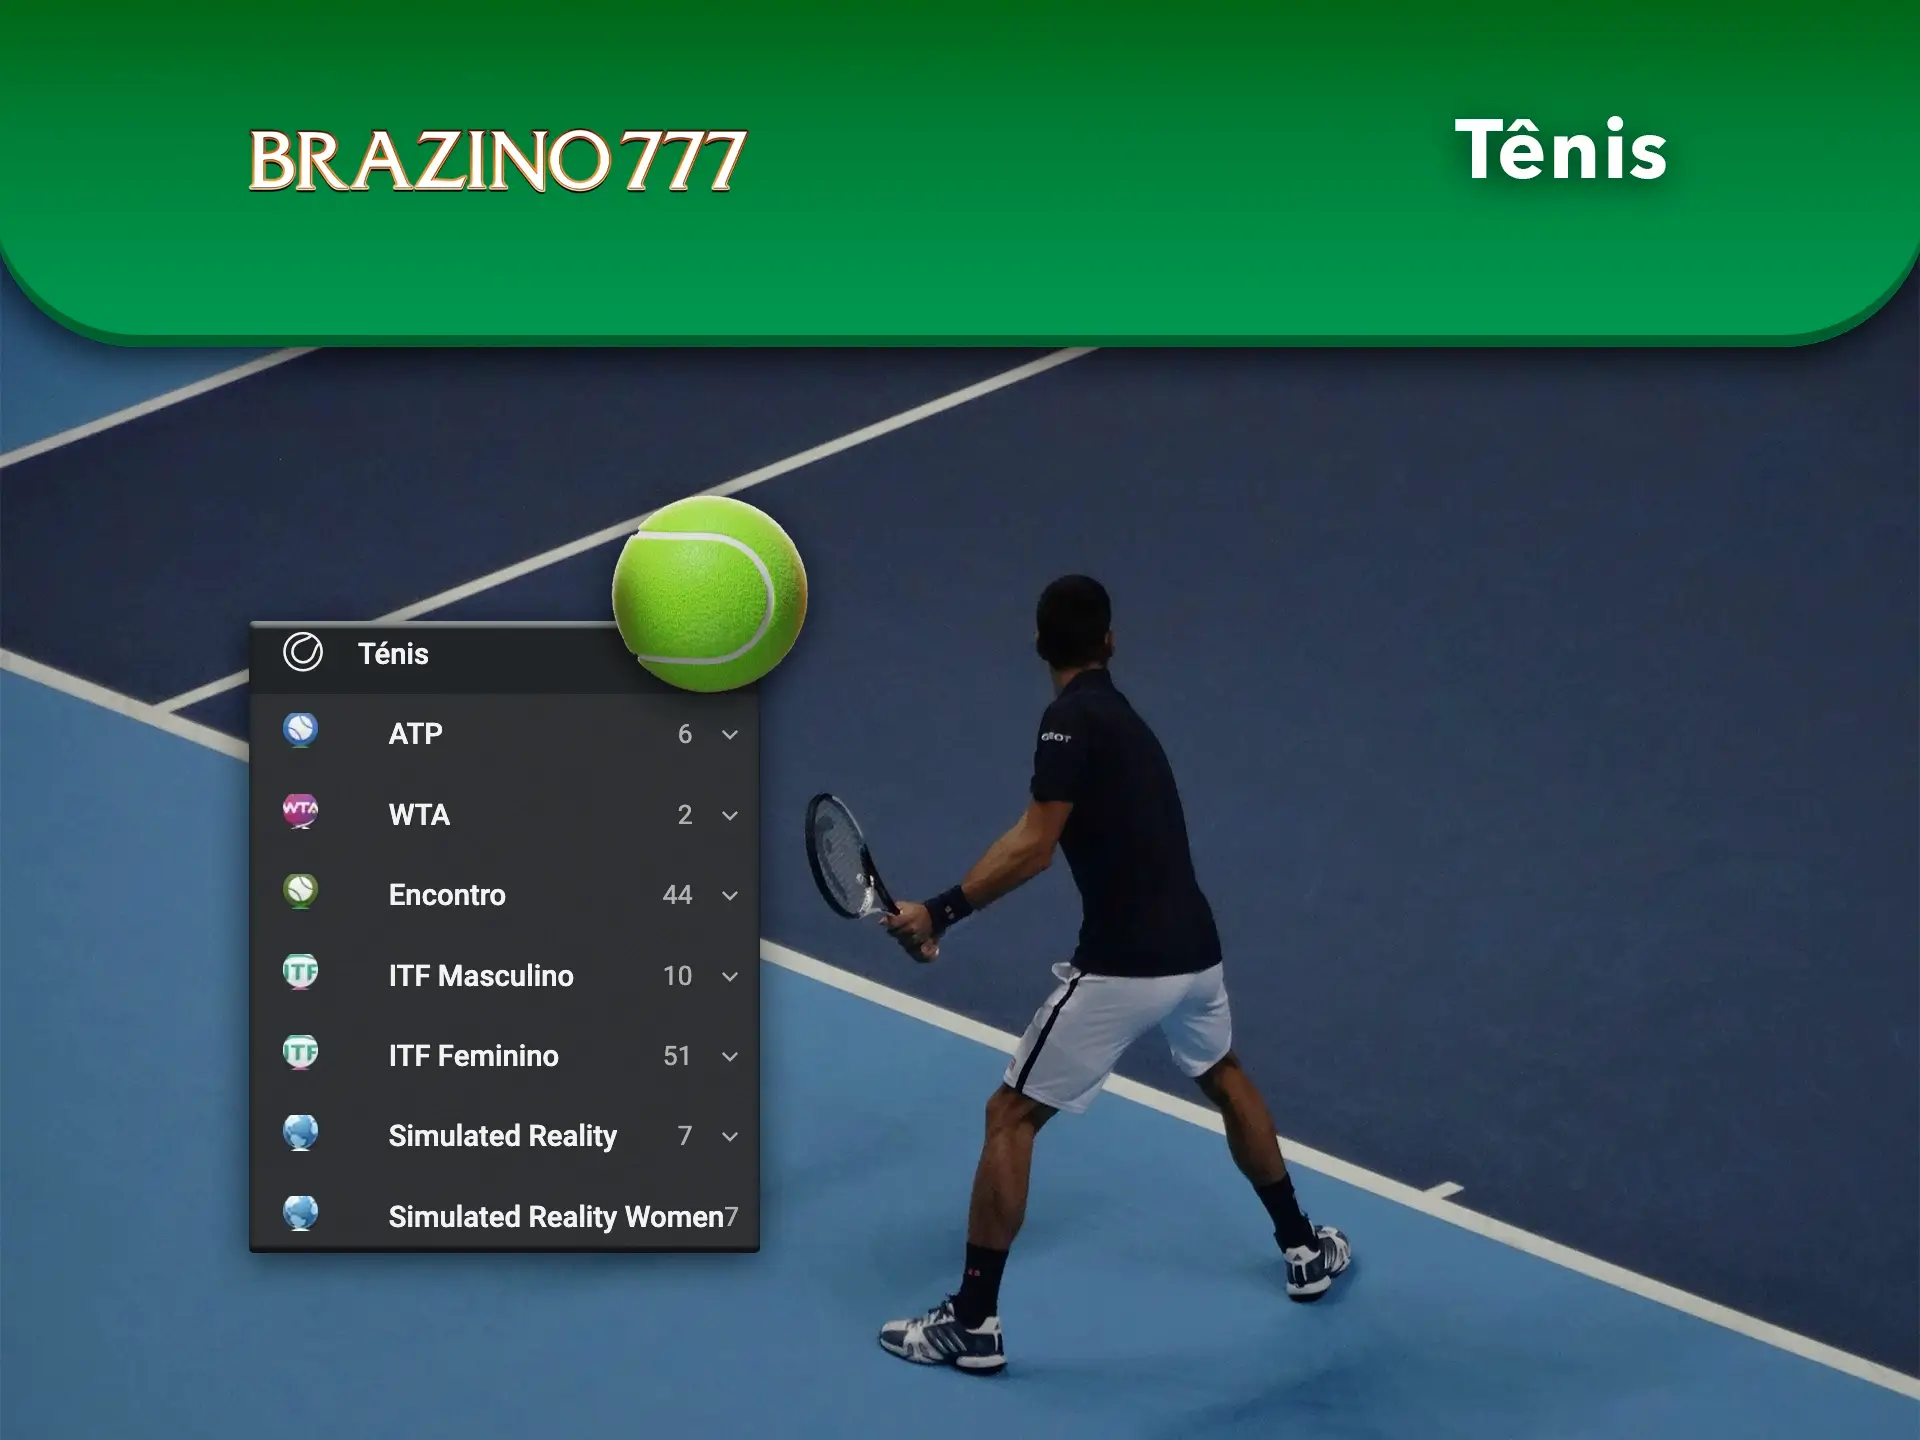 Siga os rankings de raquetes de ténis do mundo e faça previsões correctas no Casino Brazino777.